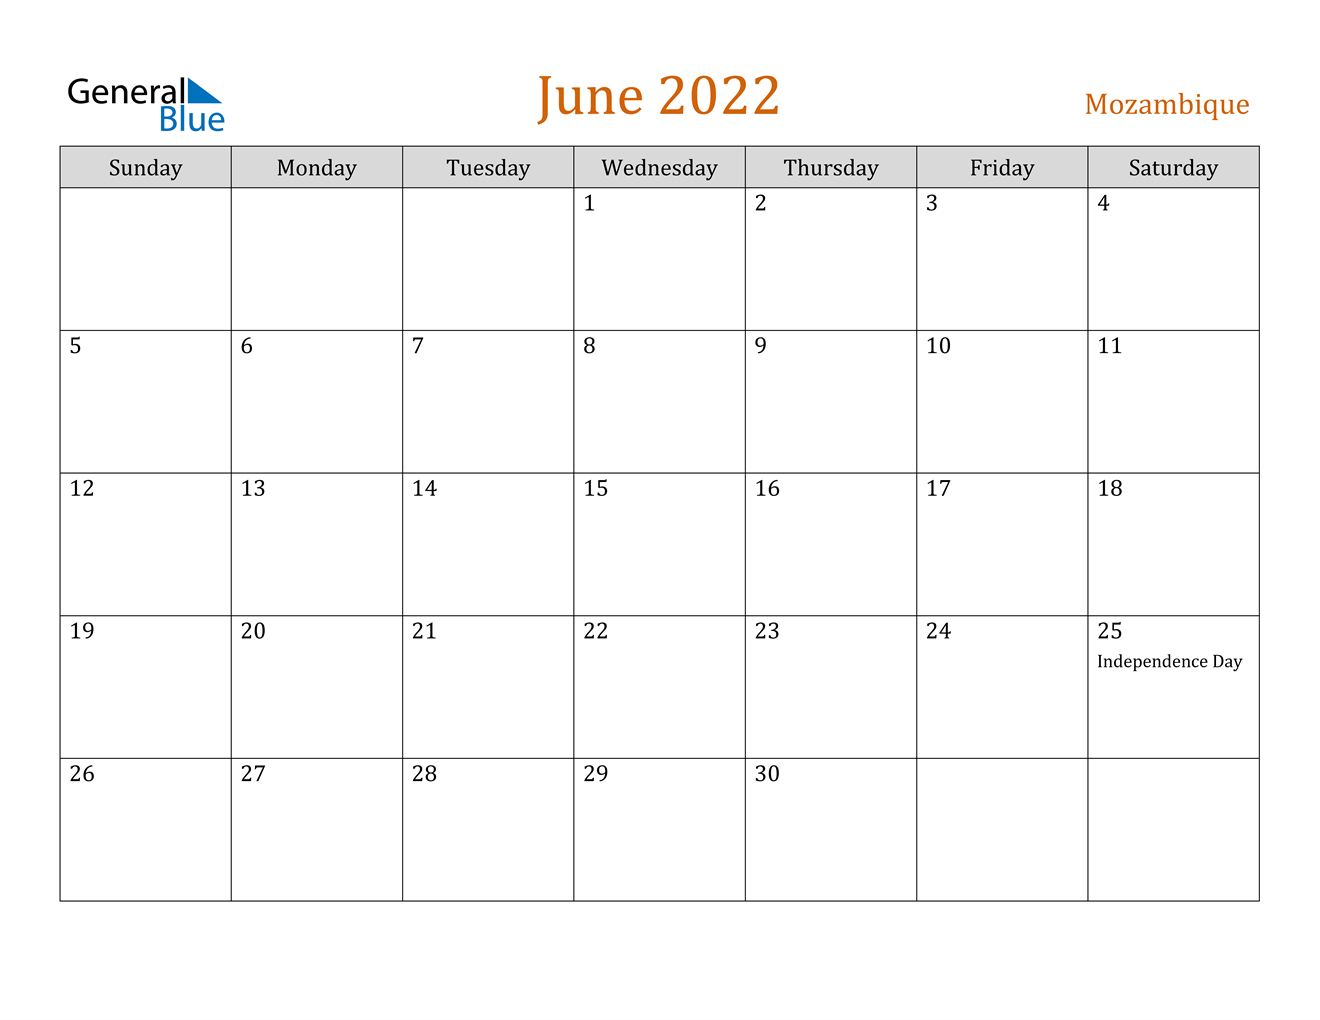 June 2022 Calendar - Mozambique  June Calendar For 2022